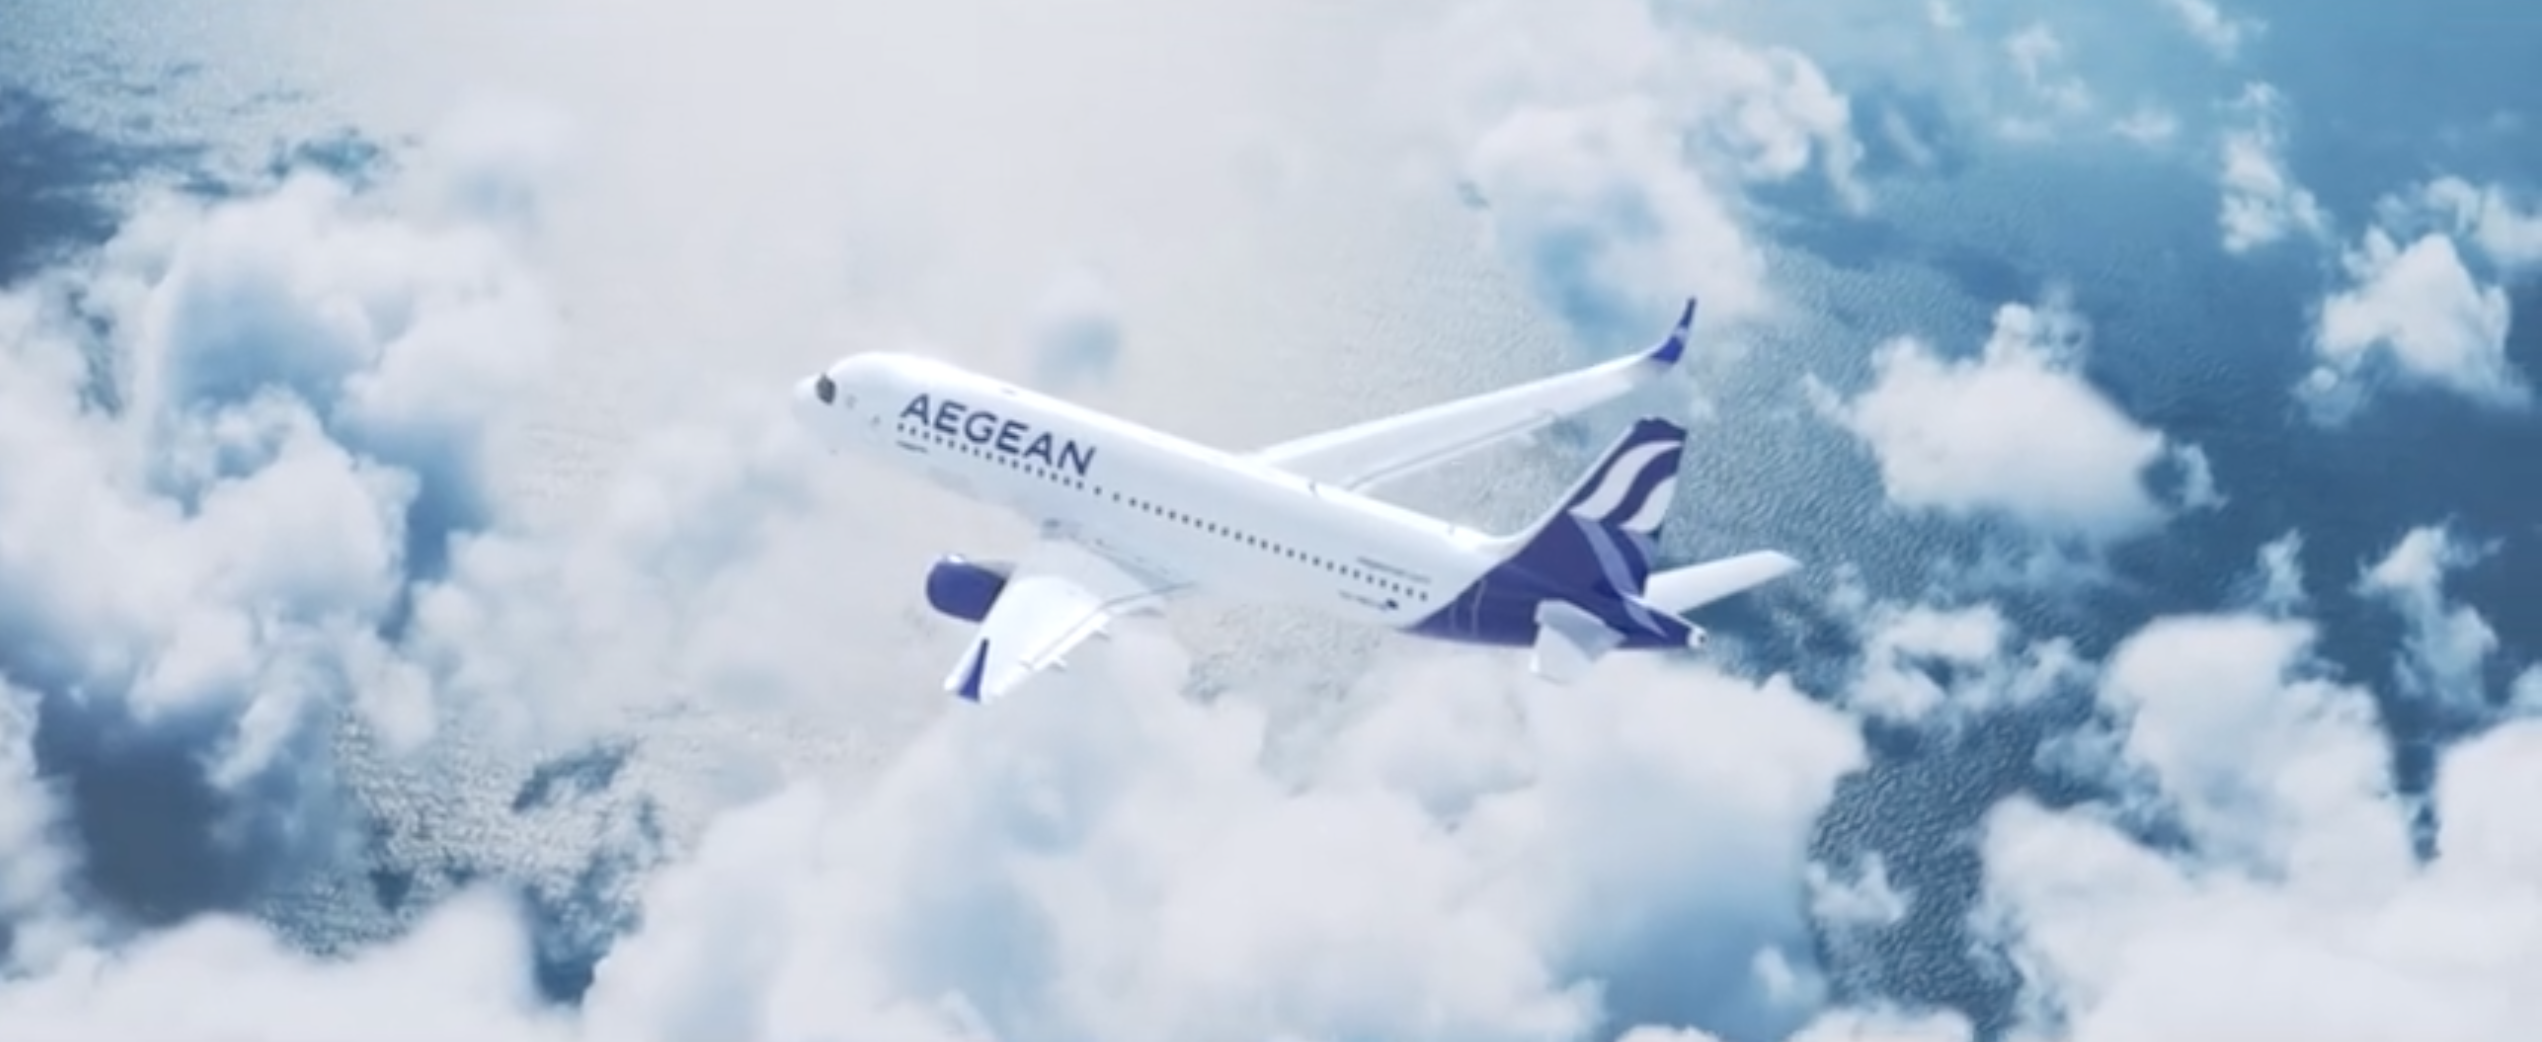 希腊爱琴海航空公司Aegean Airlines新启航新logo